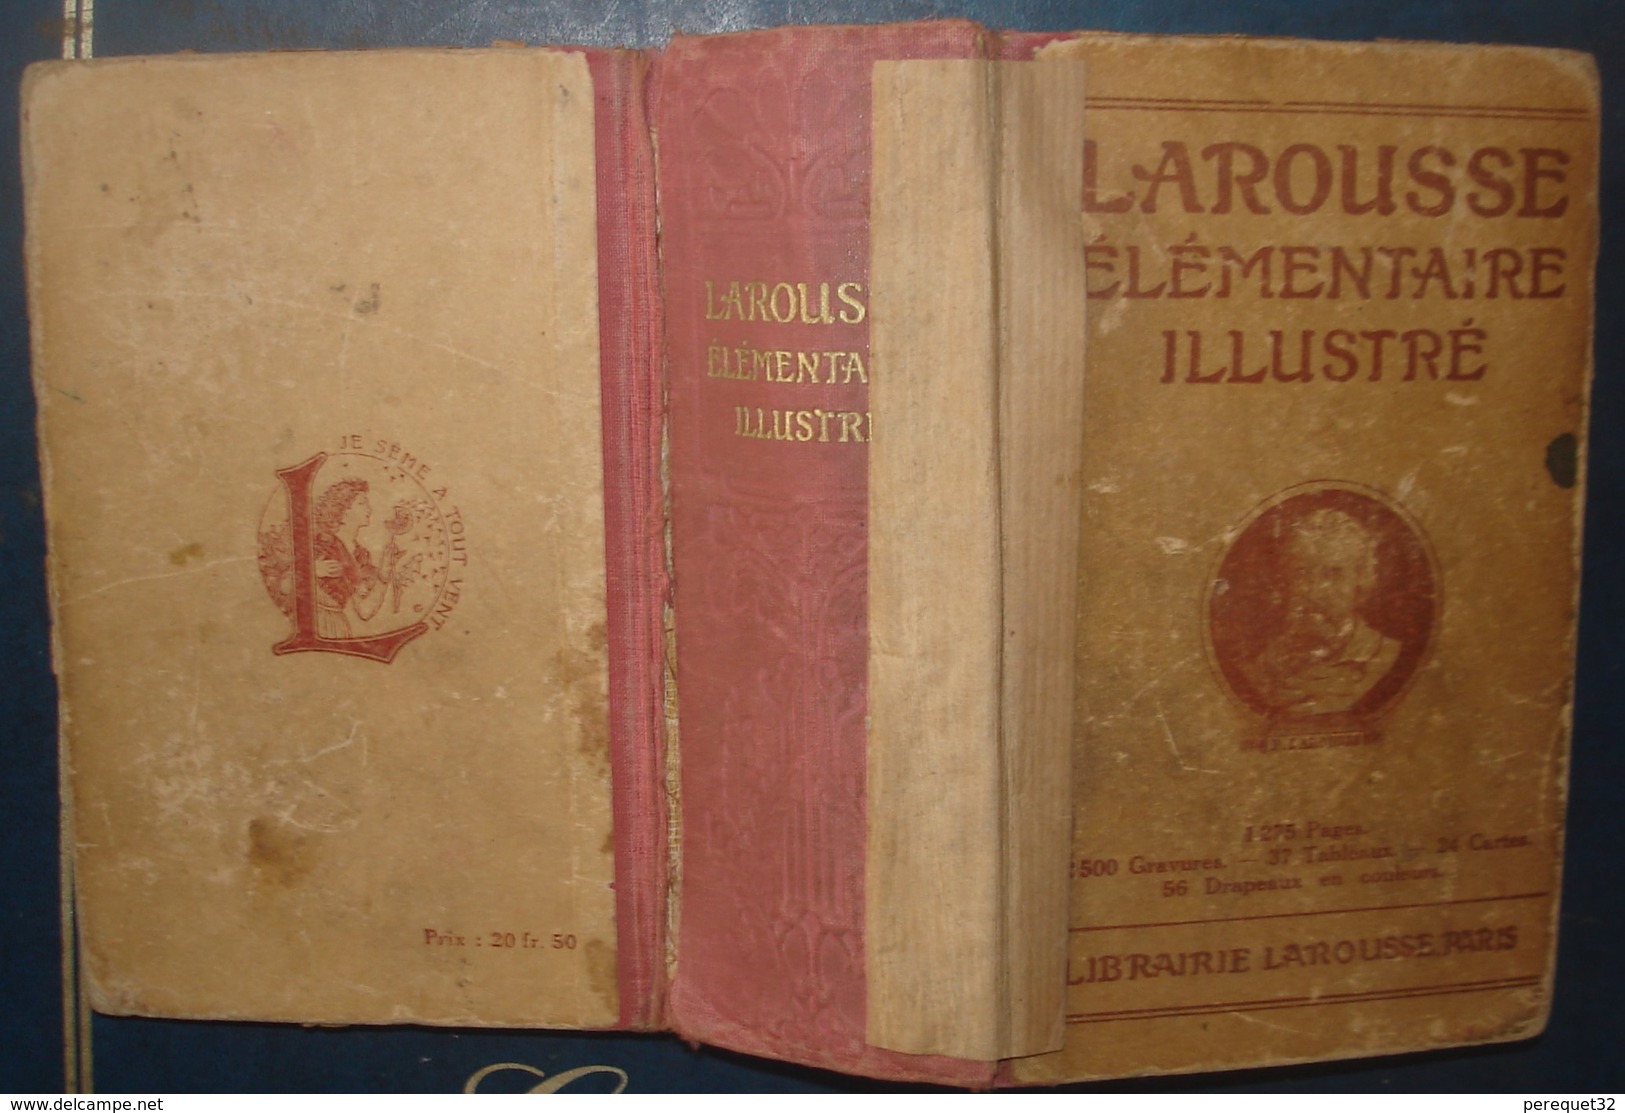 LAROUSSE ELEMENTAIRE ILLUSTRE.1932.1275 Pages - Dictionaries